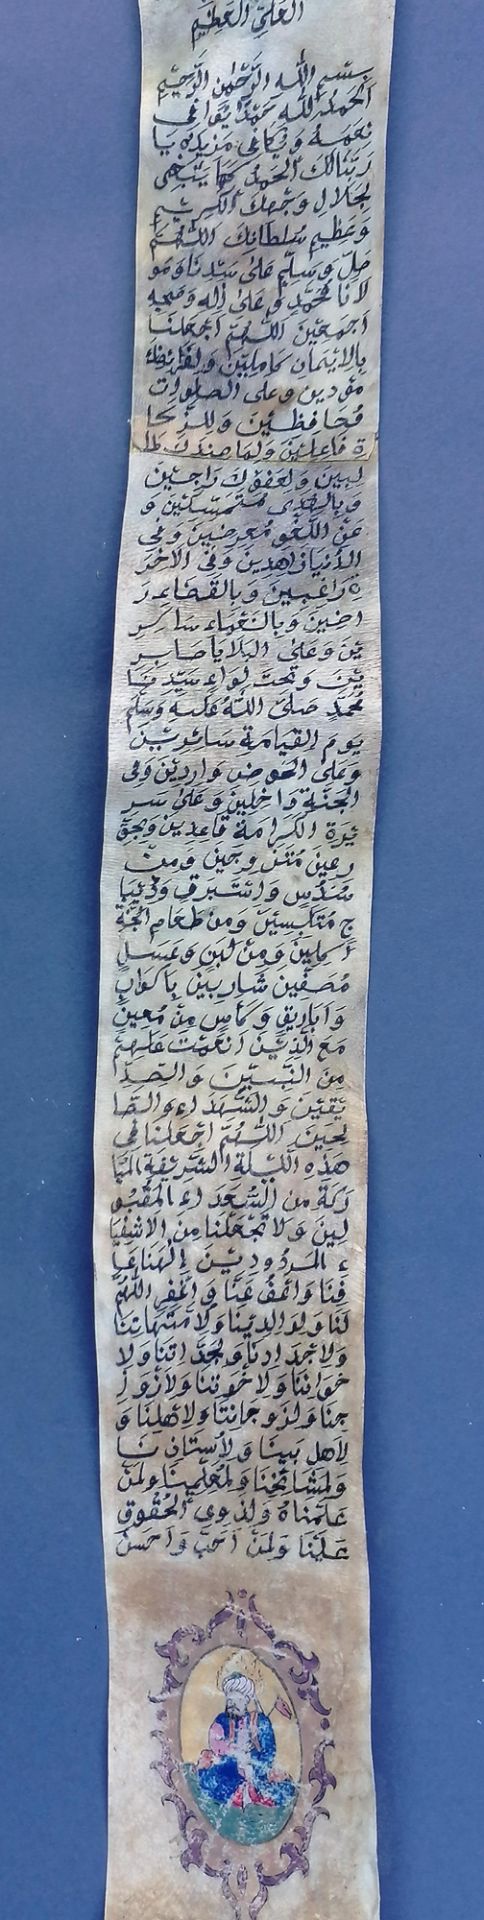 Suren-Pergamentrolle, osmanisches Reich, datiert 1217 (= 1802) - Bild 3 aus 5